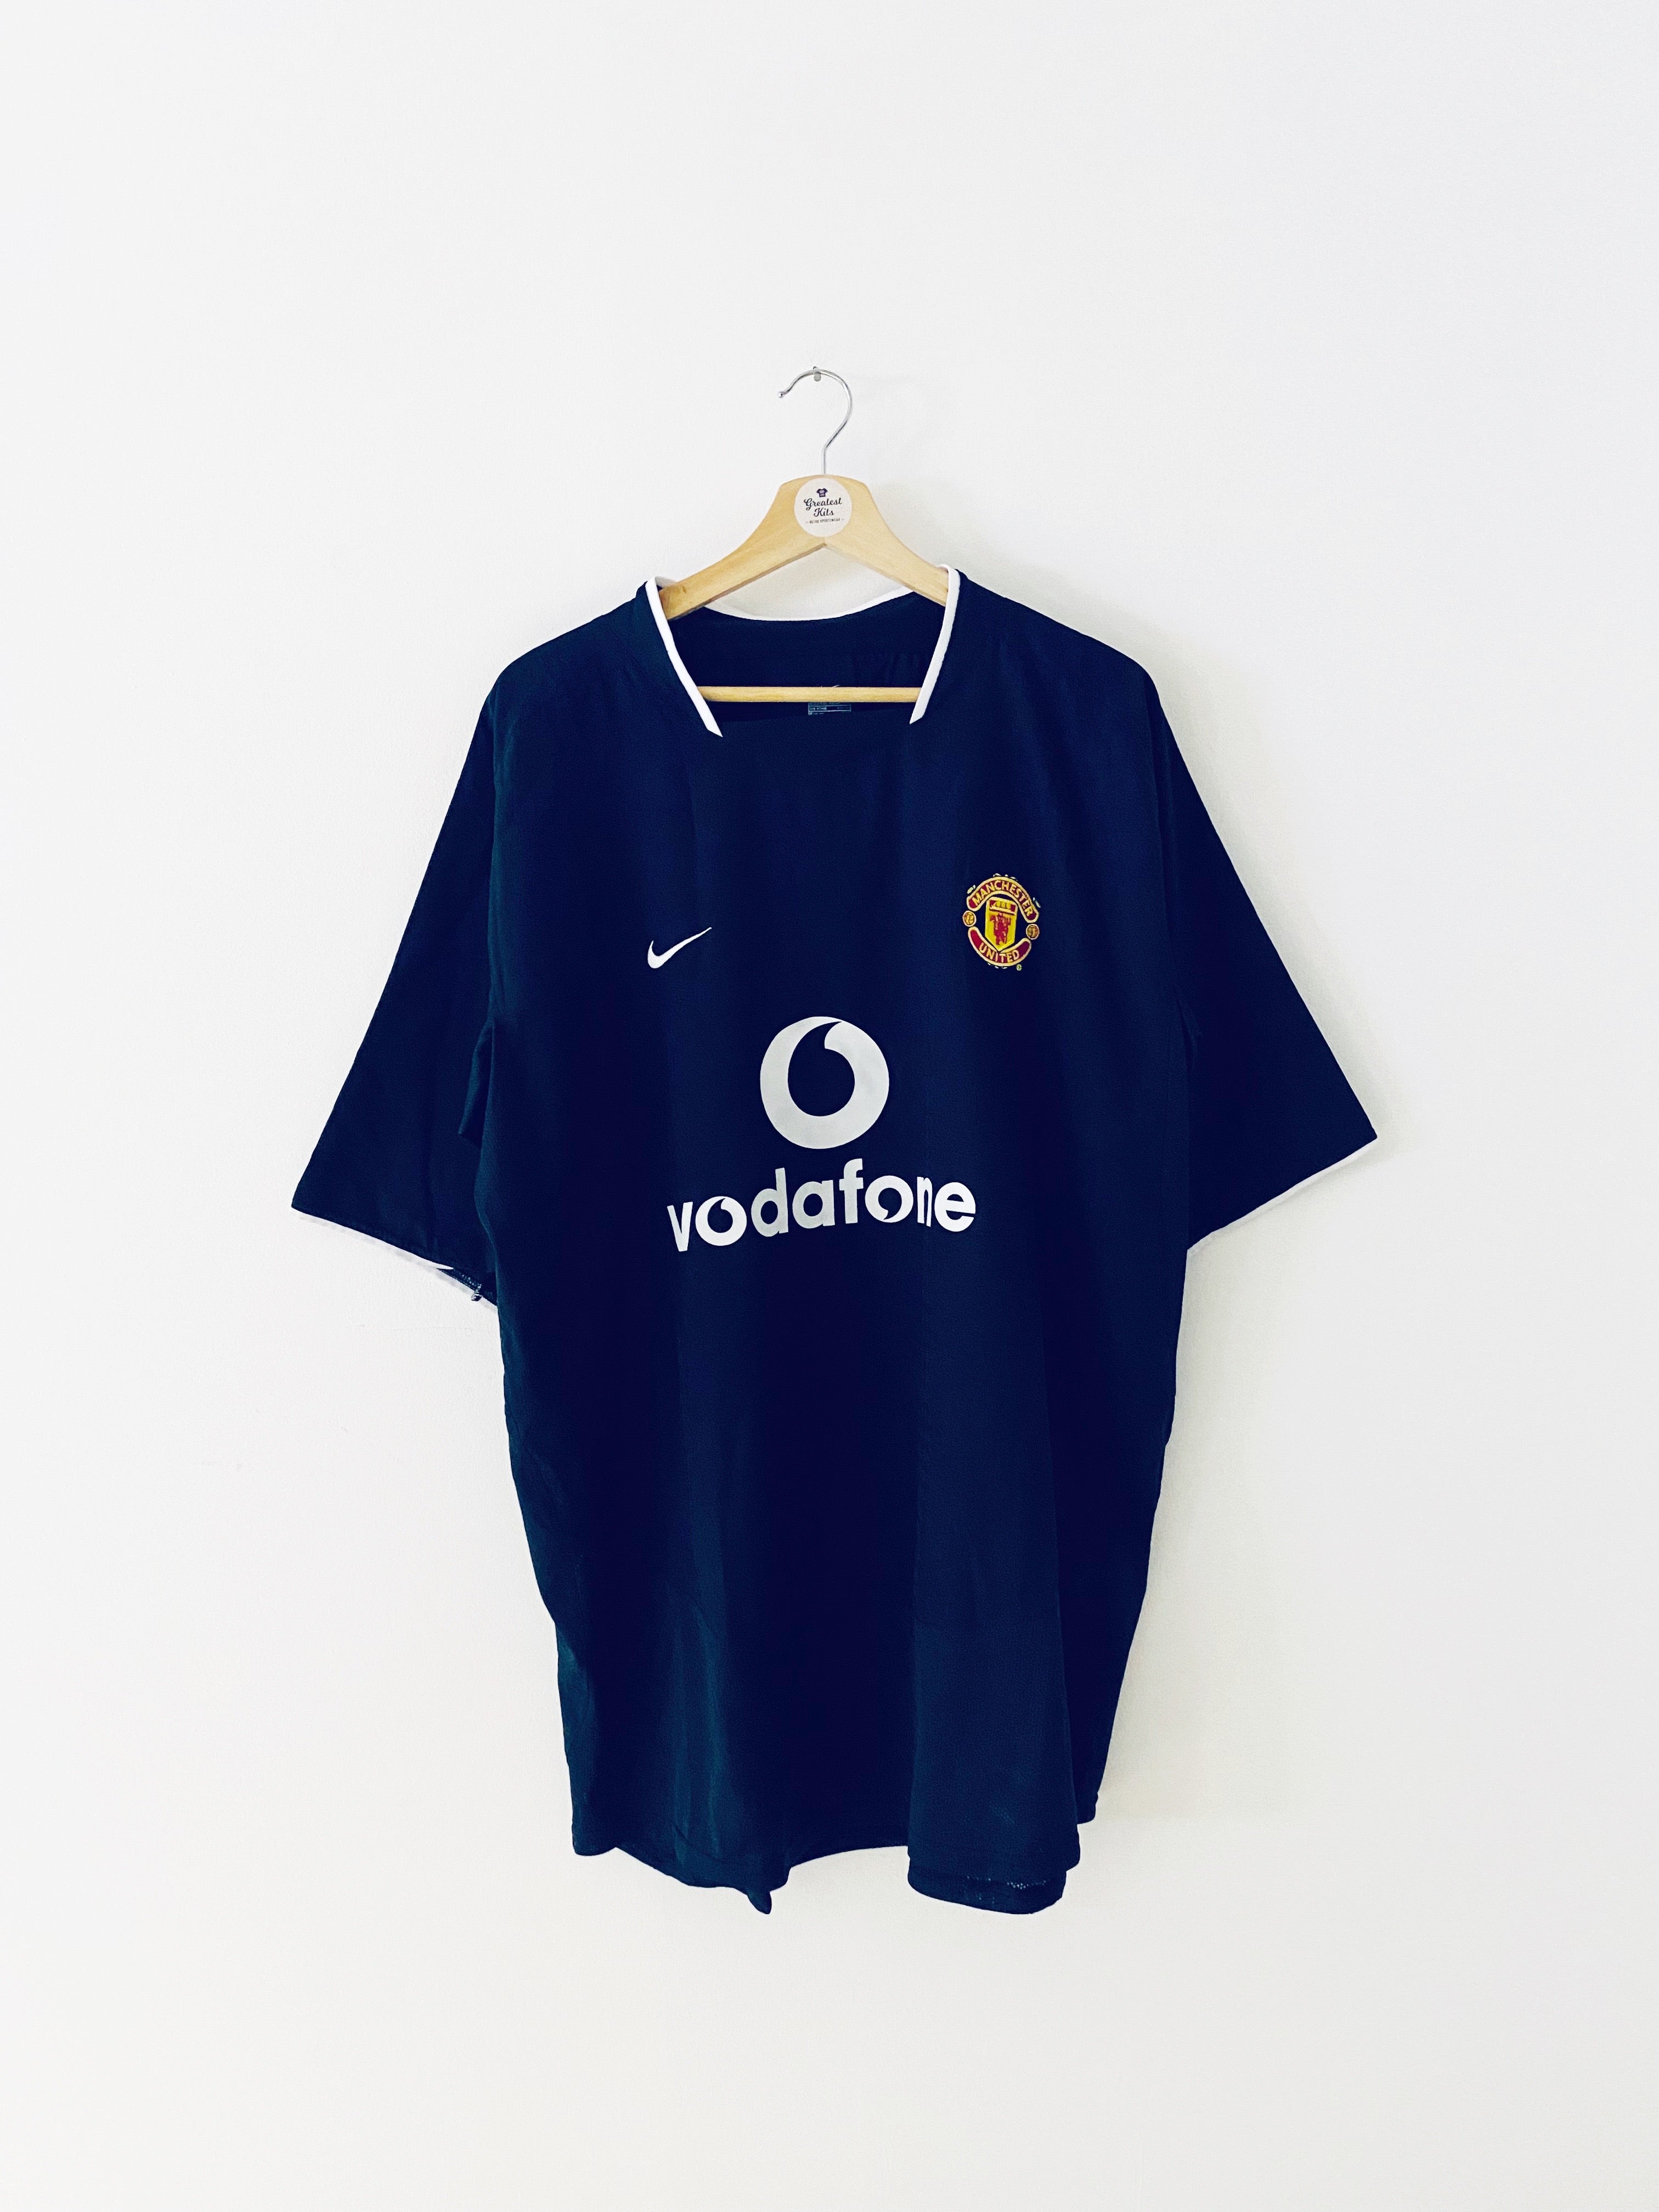 2003/05 Manchester United Away Shirt (XXL) 9.5/10